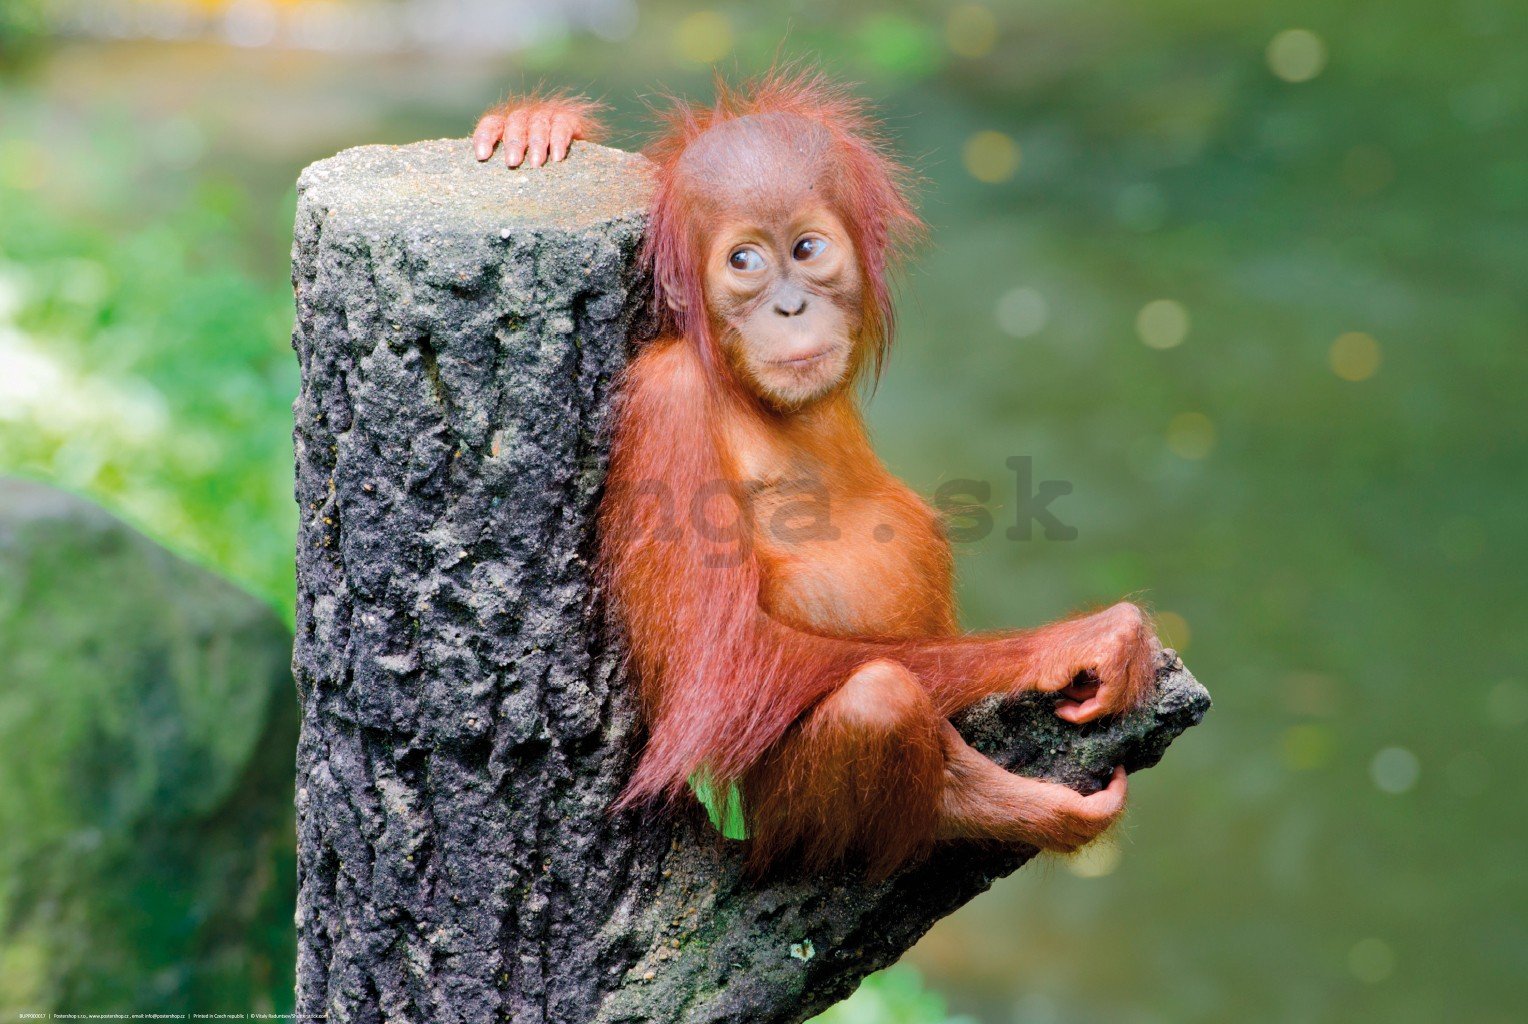 Plagát: Mláďa orangutana